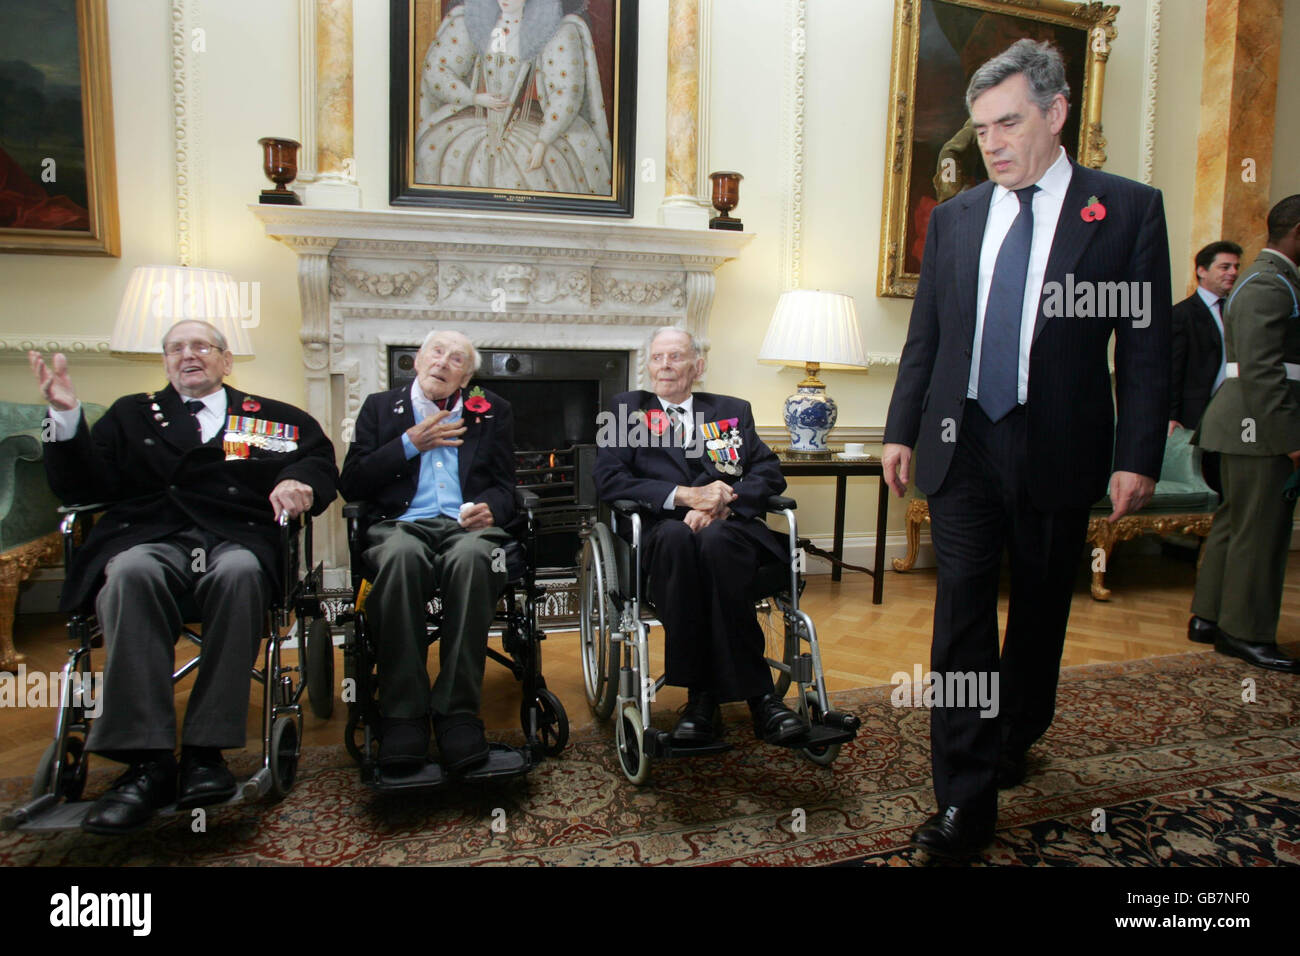 Premierminister Gordon Brown, mit den Veteranen des Ersten Weltkriegs Bill Stone, 108, links, Henry Allinghan, 112, Mitte, und Harry Patch, 110, rechts, während eines Waffenstillstandsempfangs für Veteranen des Ersten Weltkriegs, in Browns offizieller Residenz in der Downing Street 10, im Zentrum von London. Stockfoto